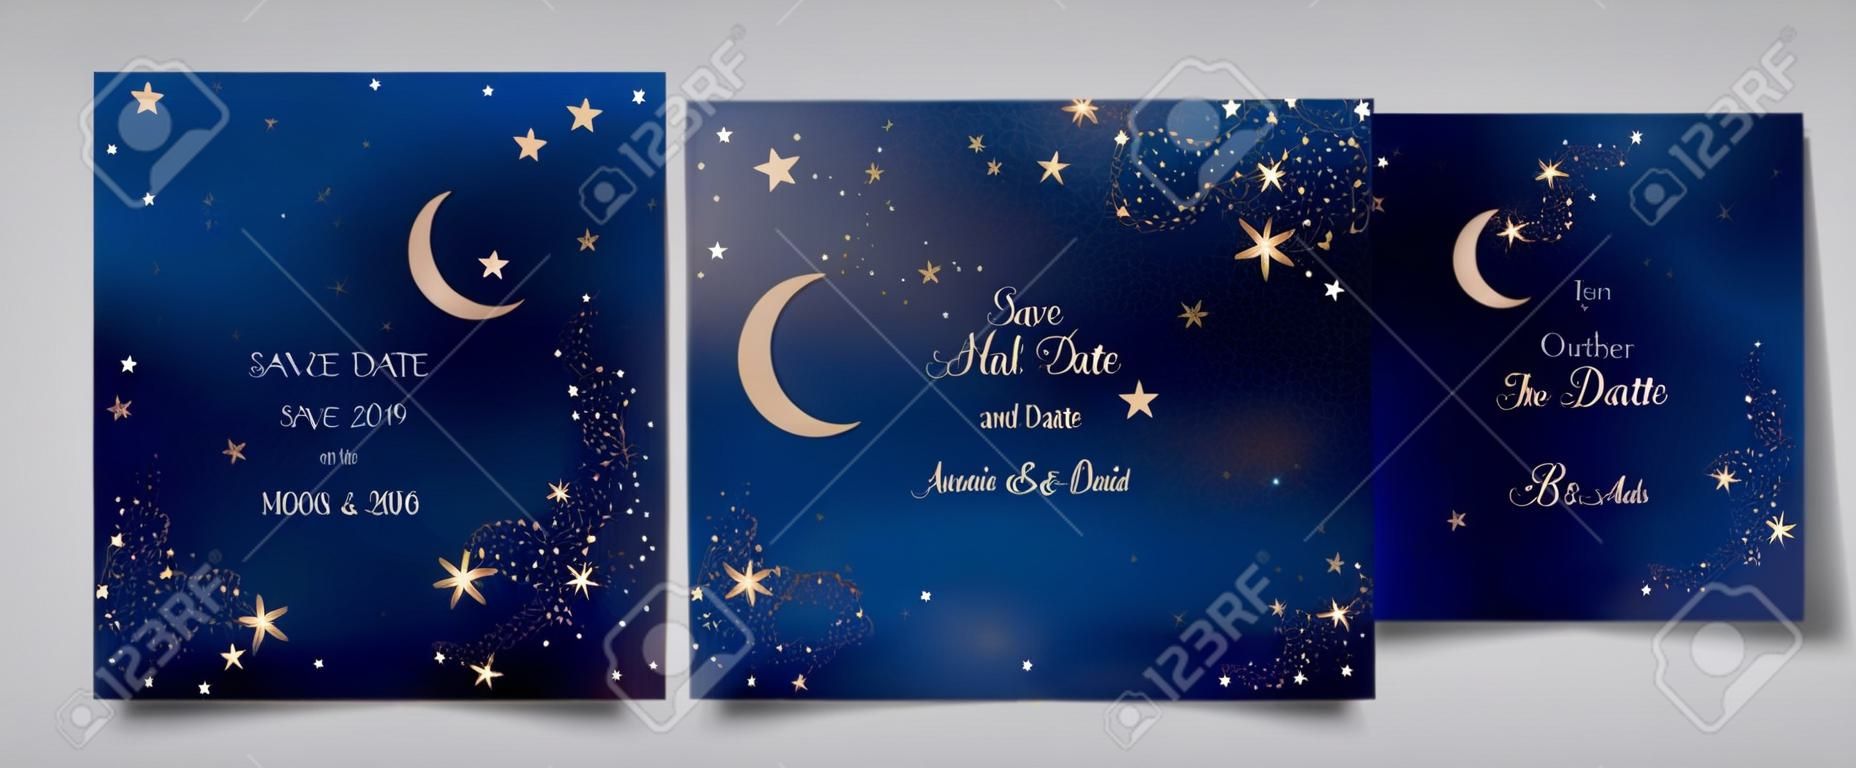 Mystischer Nachthimmelhintergrund mit Halbmond und Sternen. Hochzeitseinladung bei Mondschein und Save the Date Karte im Vektor